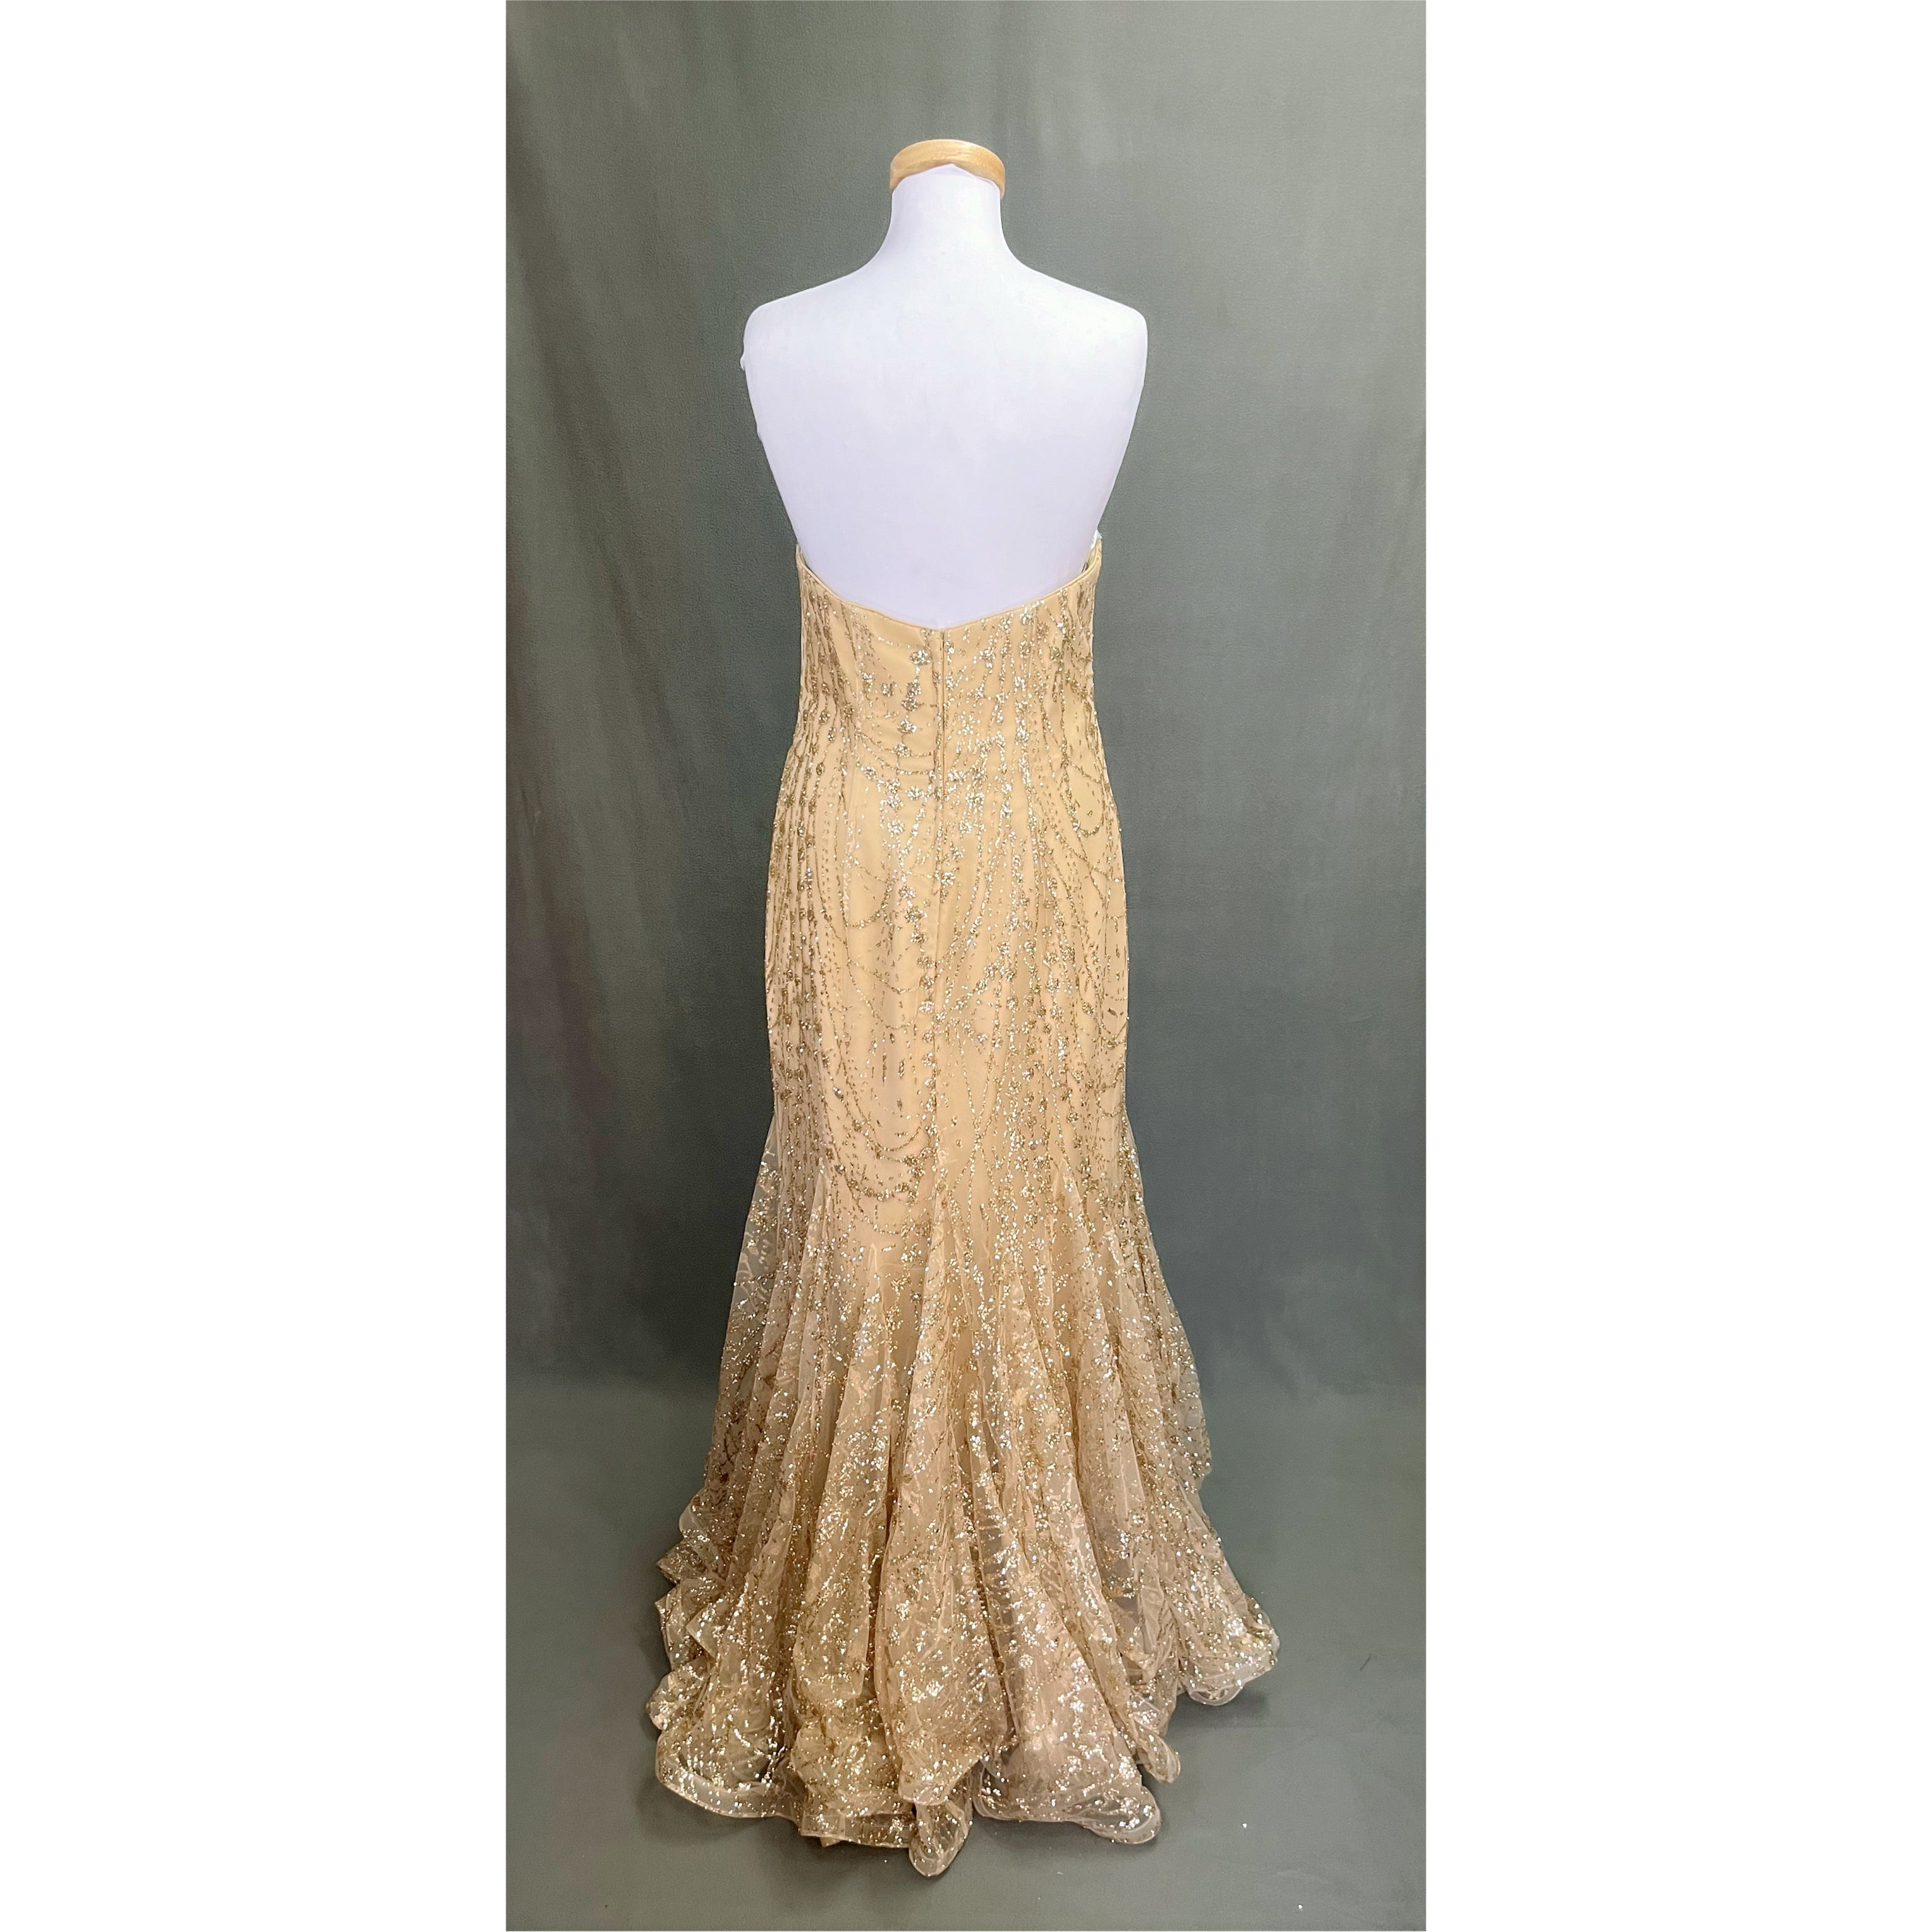 Ellie Wilde gold dress, size 14